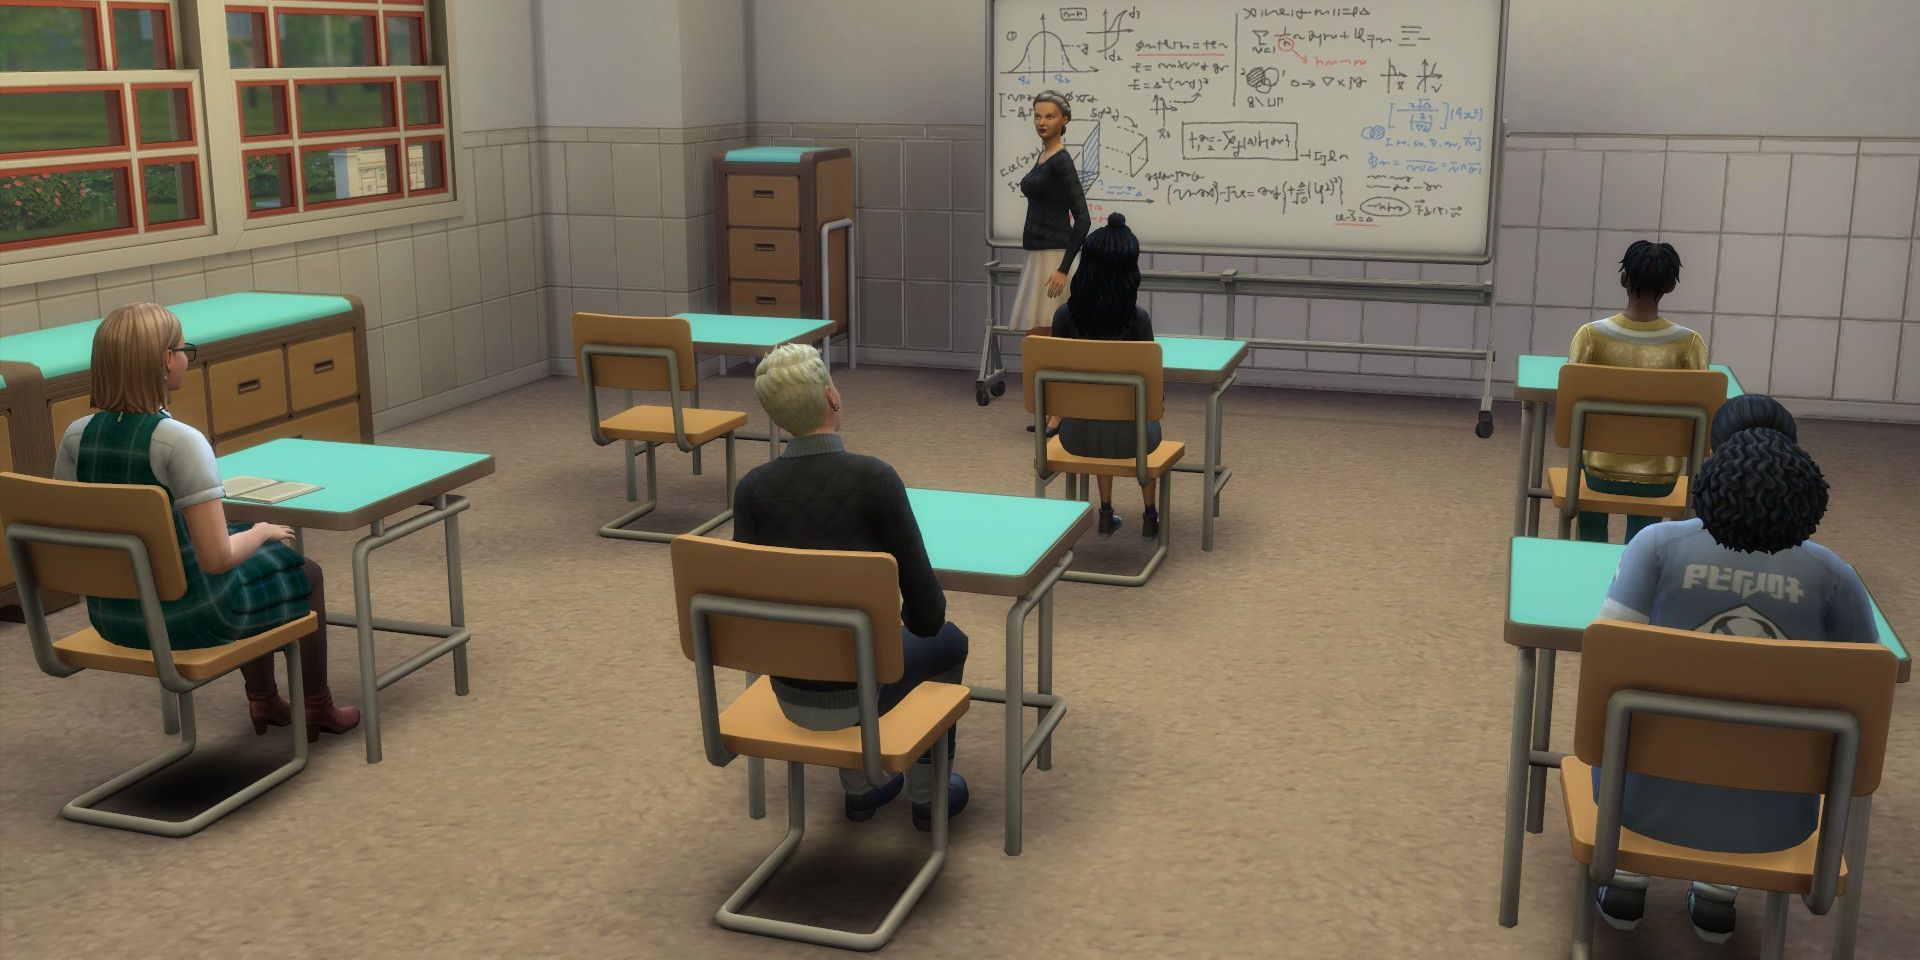 Sims 4 video oyununda sınıfta oturan öğrenciler